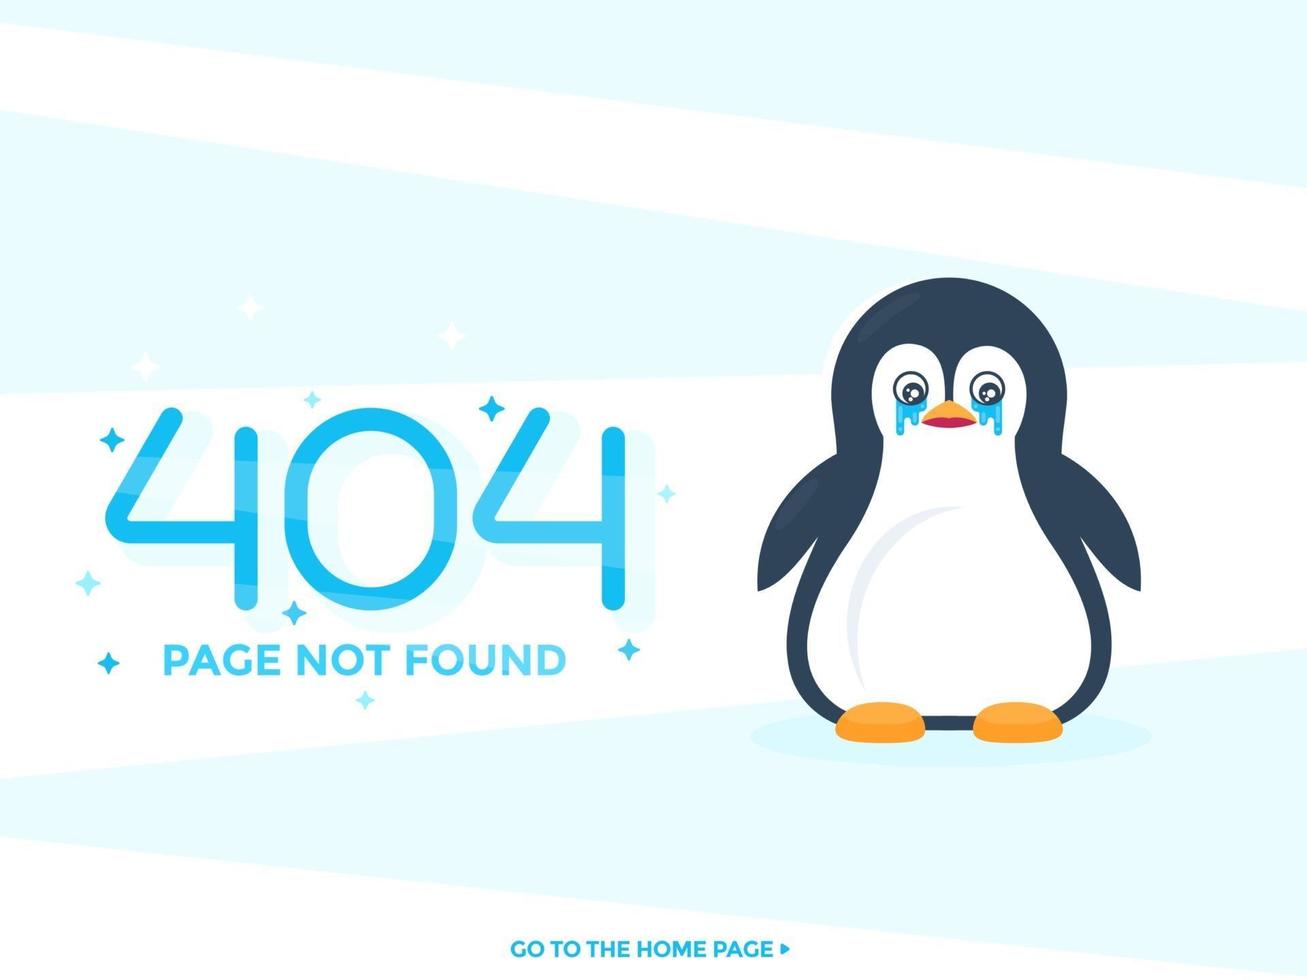 Página 404 no encontrada con diseño web de vector de pinguin llorando